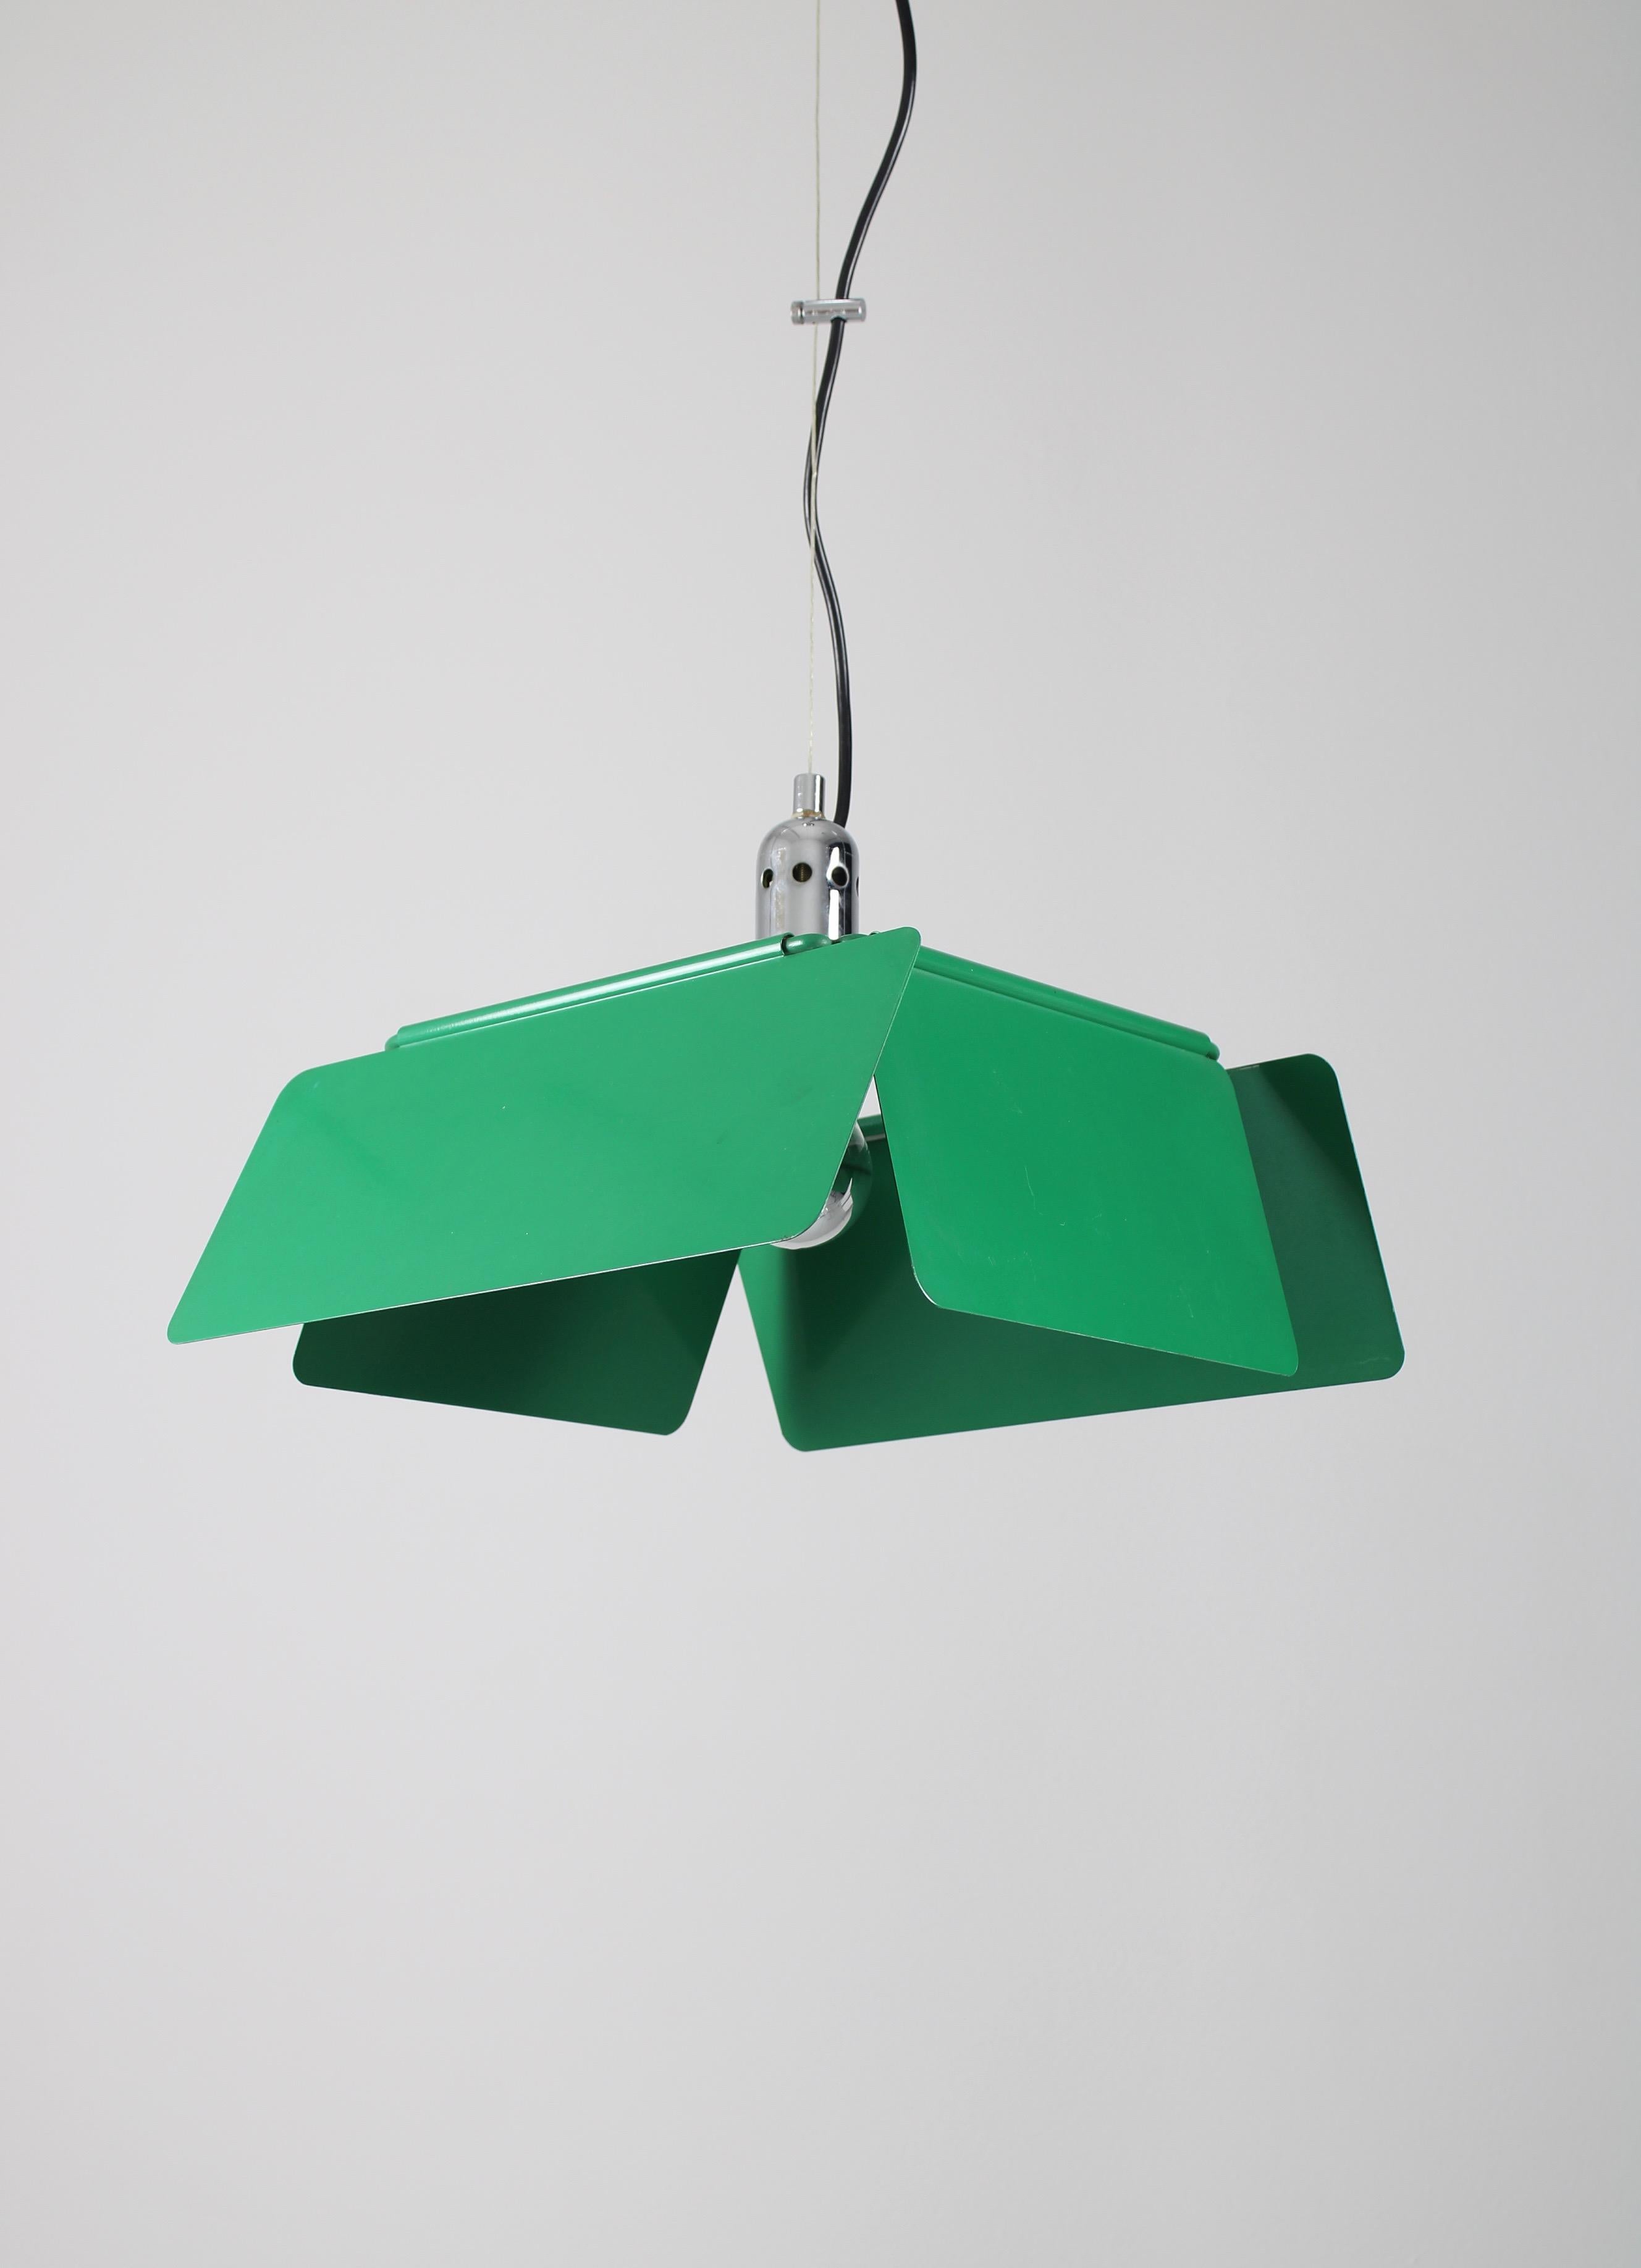 Très rare lampe à pédale appelée Diaframma. Conçu par Fabio Lenci en 1974. Produit par Design/One qui faisait partie de la marque iGuzzini. Ce design intéressant présente une structure métallique de forme carrée avec de chaque côté un abat-jour